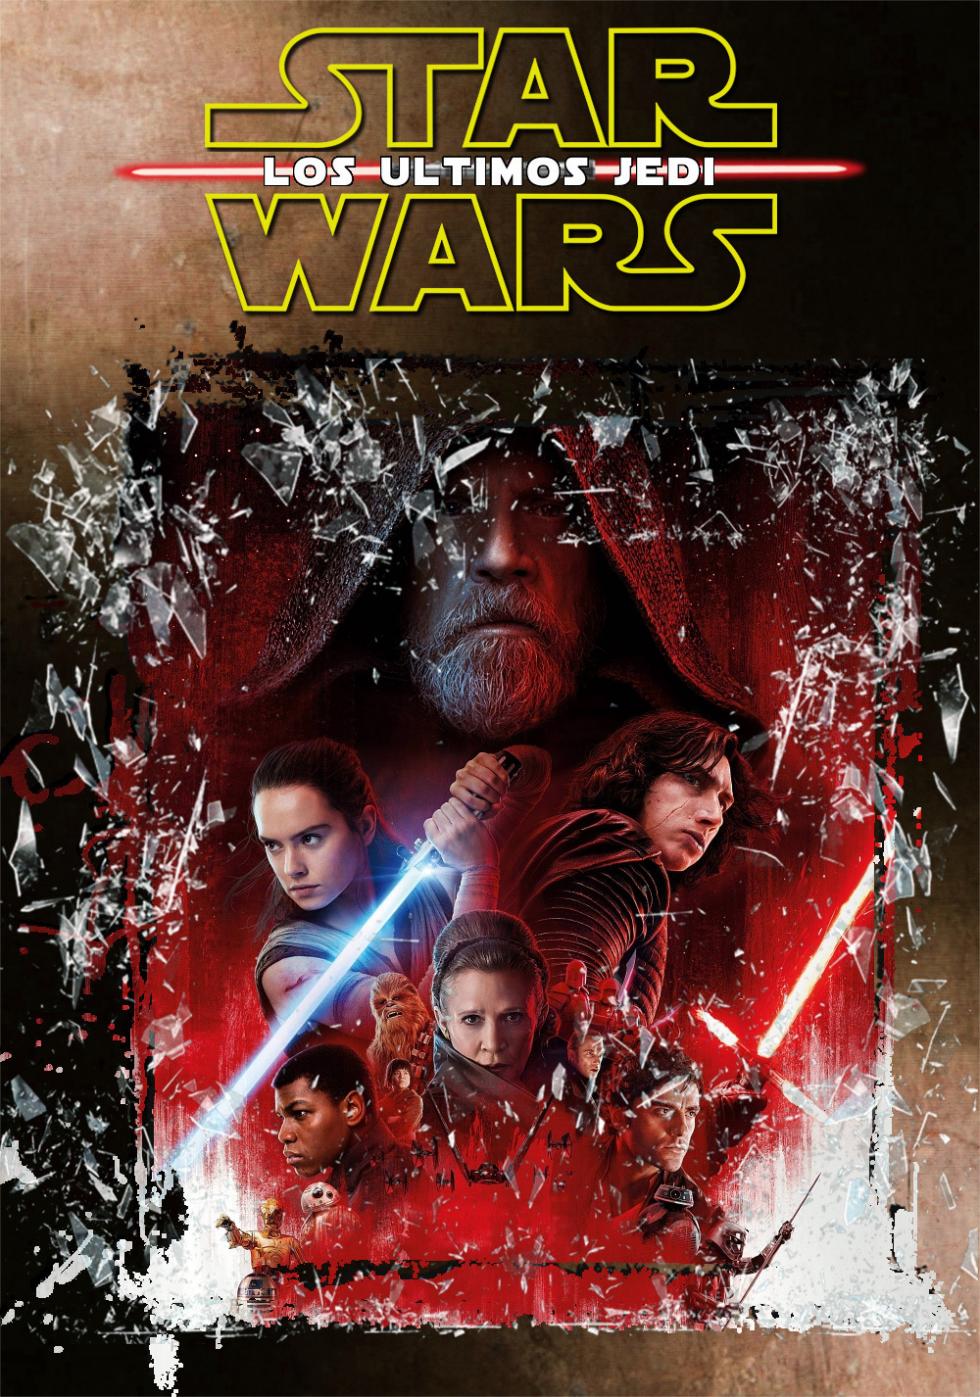 Cine de Verano en La Unión de Hortaleza: Star Wars VIII, los últimos jedi